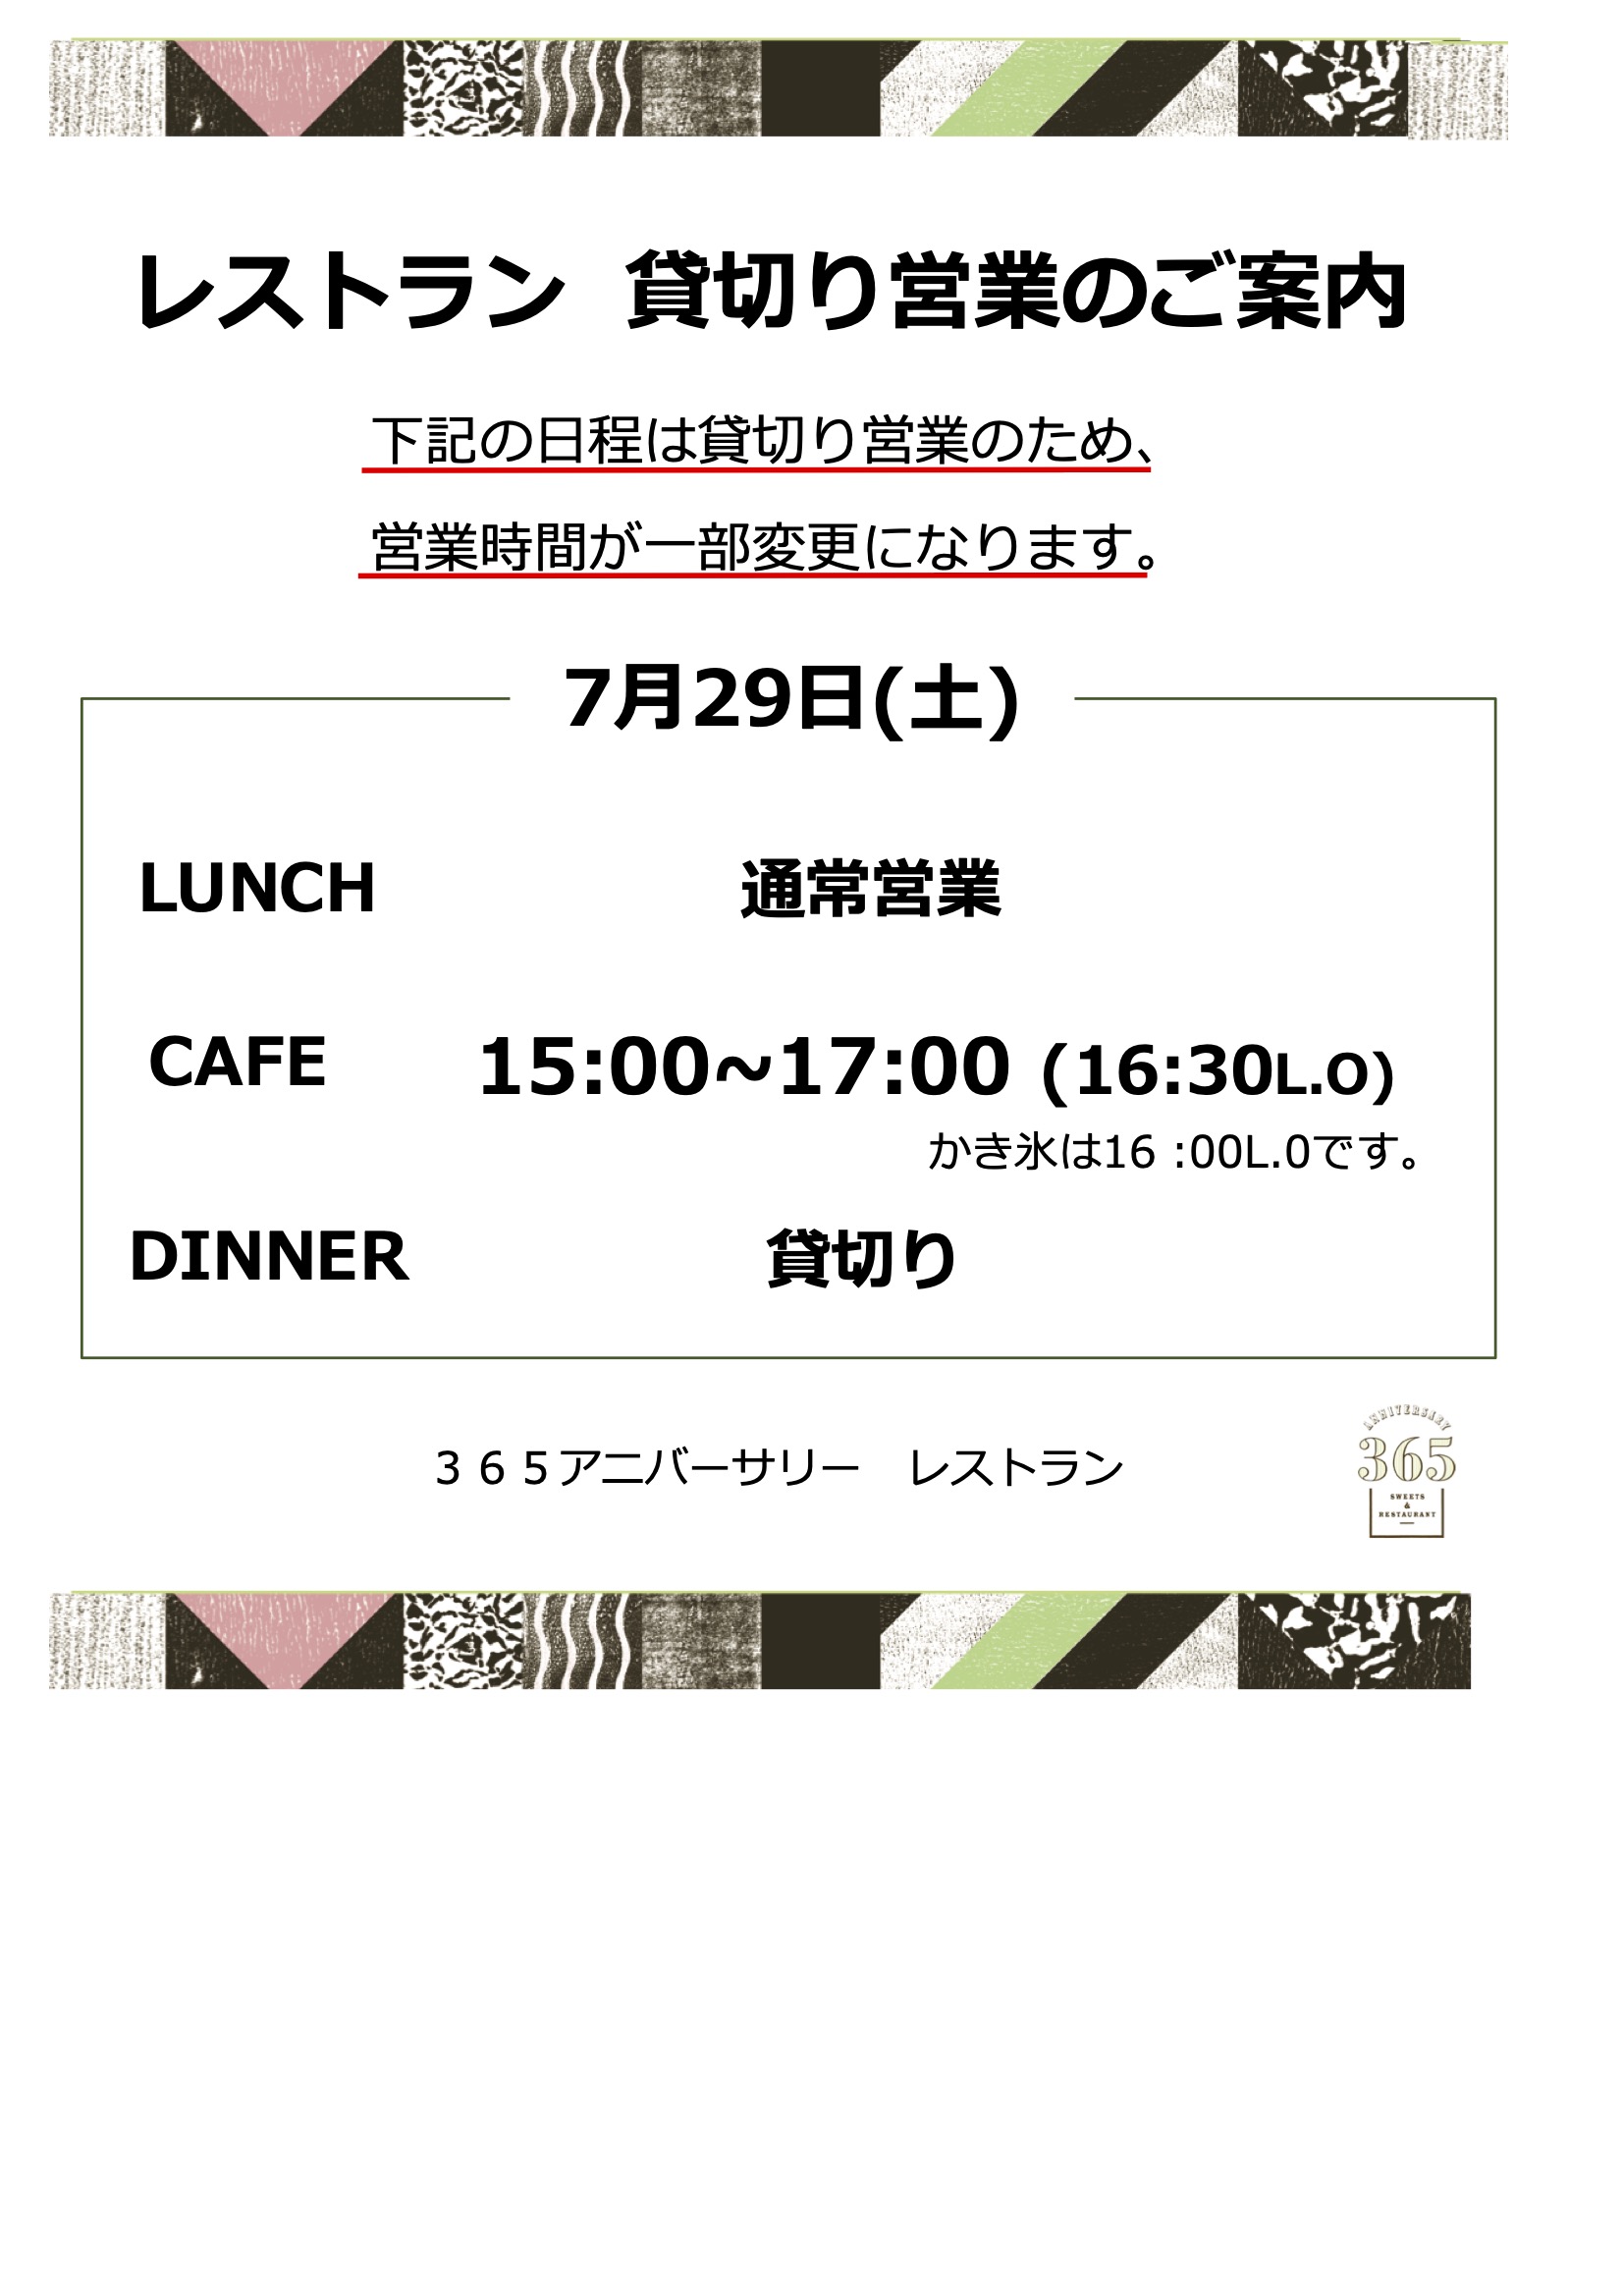 7月29日(土)レストラン営業時間変更のお知らせ